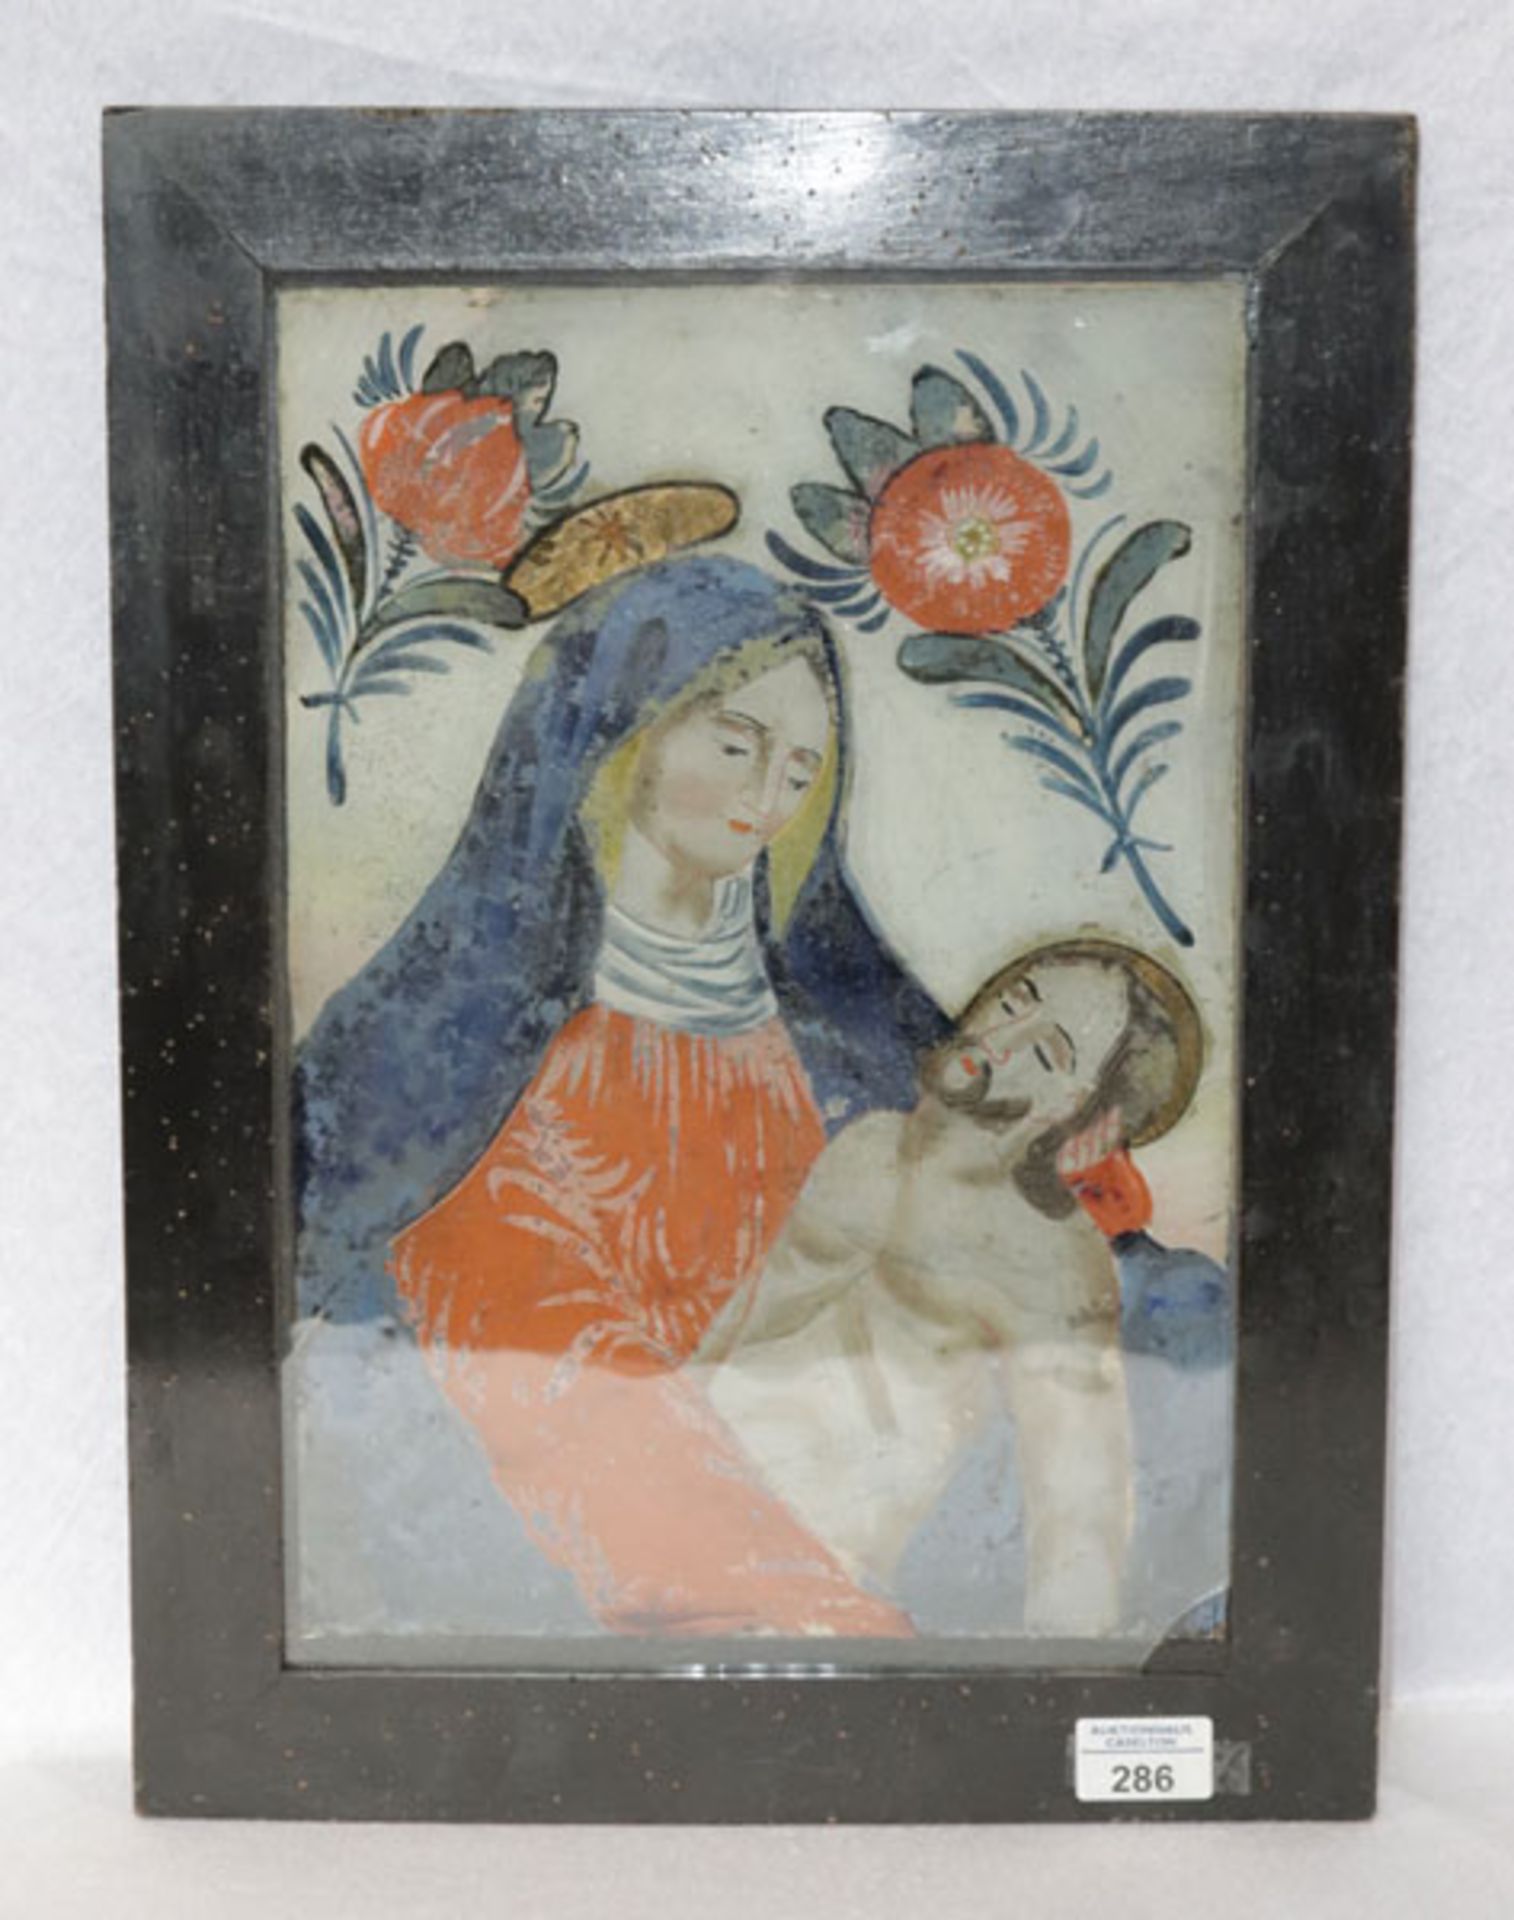 Hinterglasbild 'Maria mit Jesus', 19. Jahrhundert, am unten rechten Rand ist das Glas beschädigt,